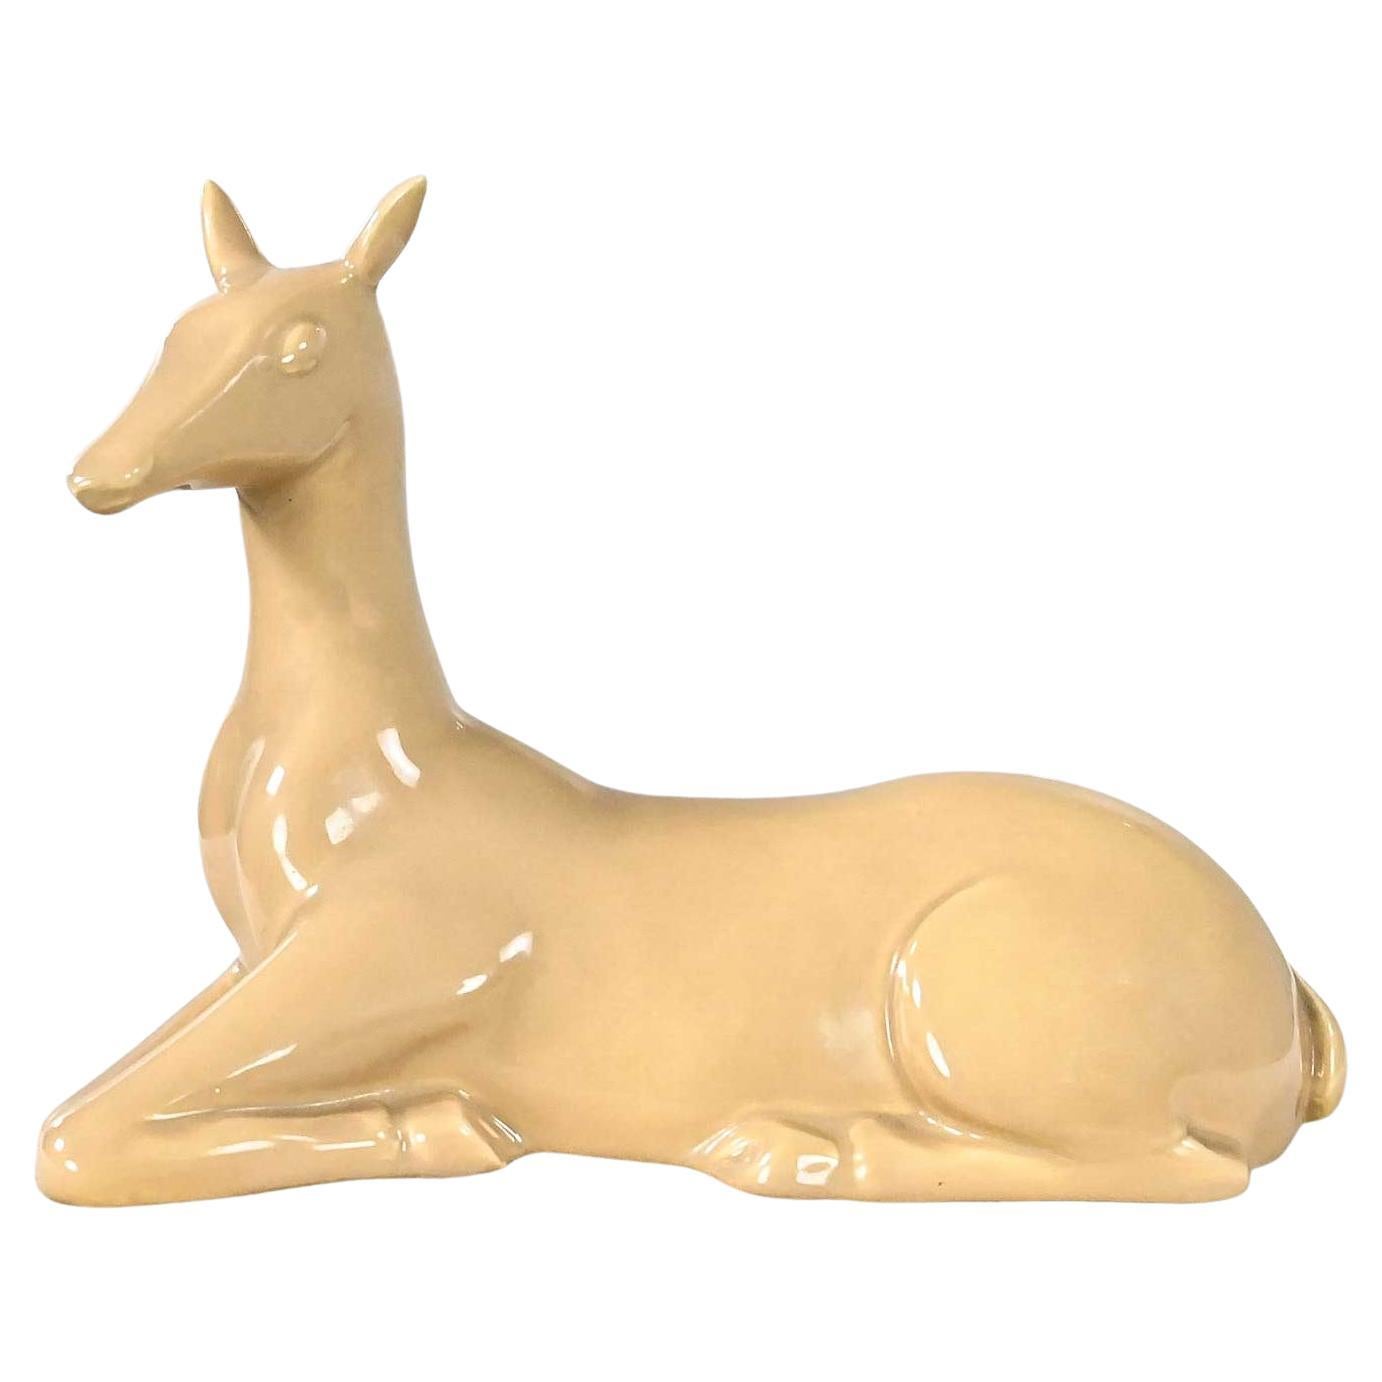 Vintage MCM to Modern Art Deco Revival Caramel Colored Ceramic Deer by Jaru 1975